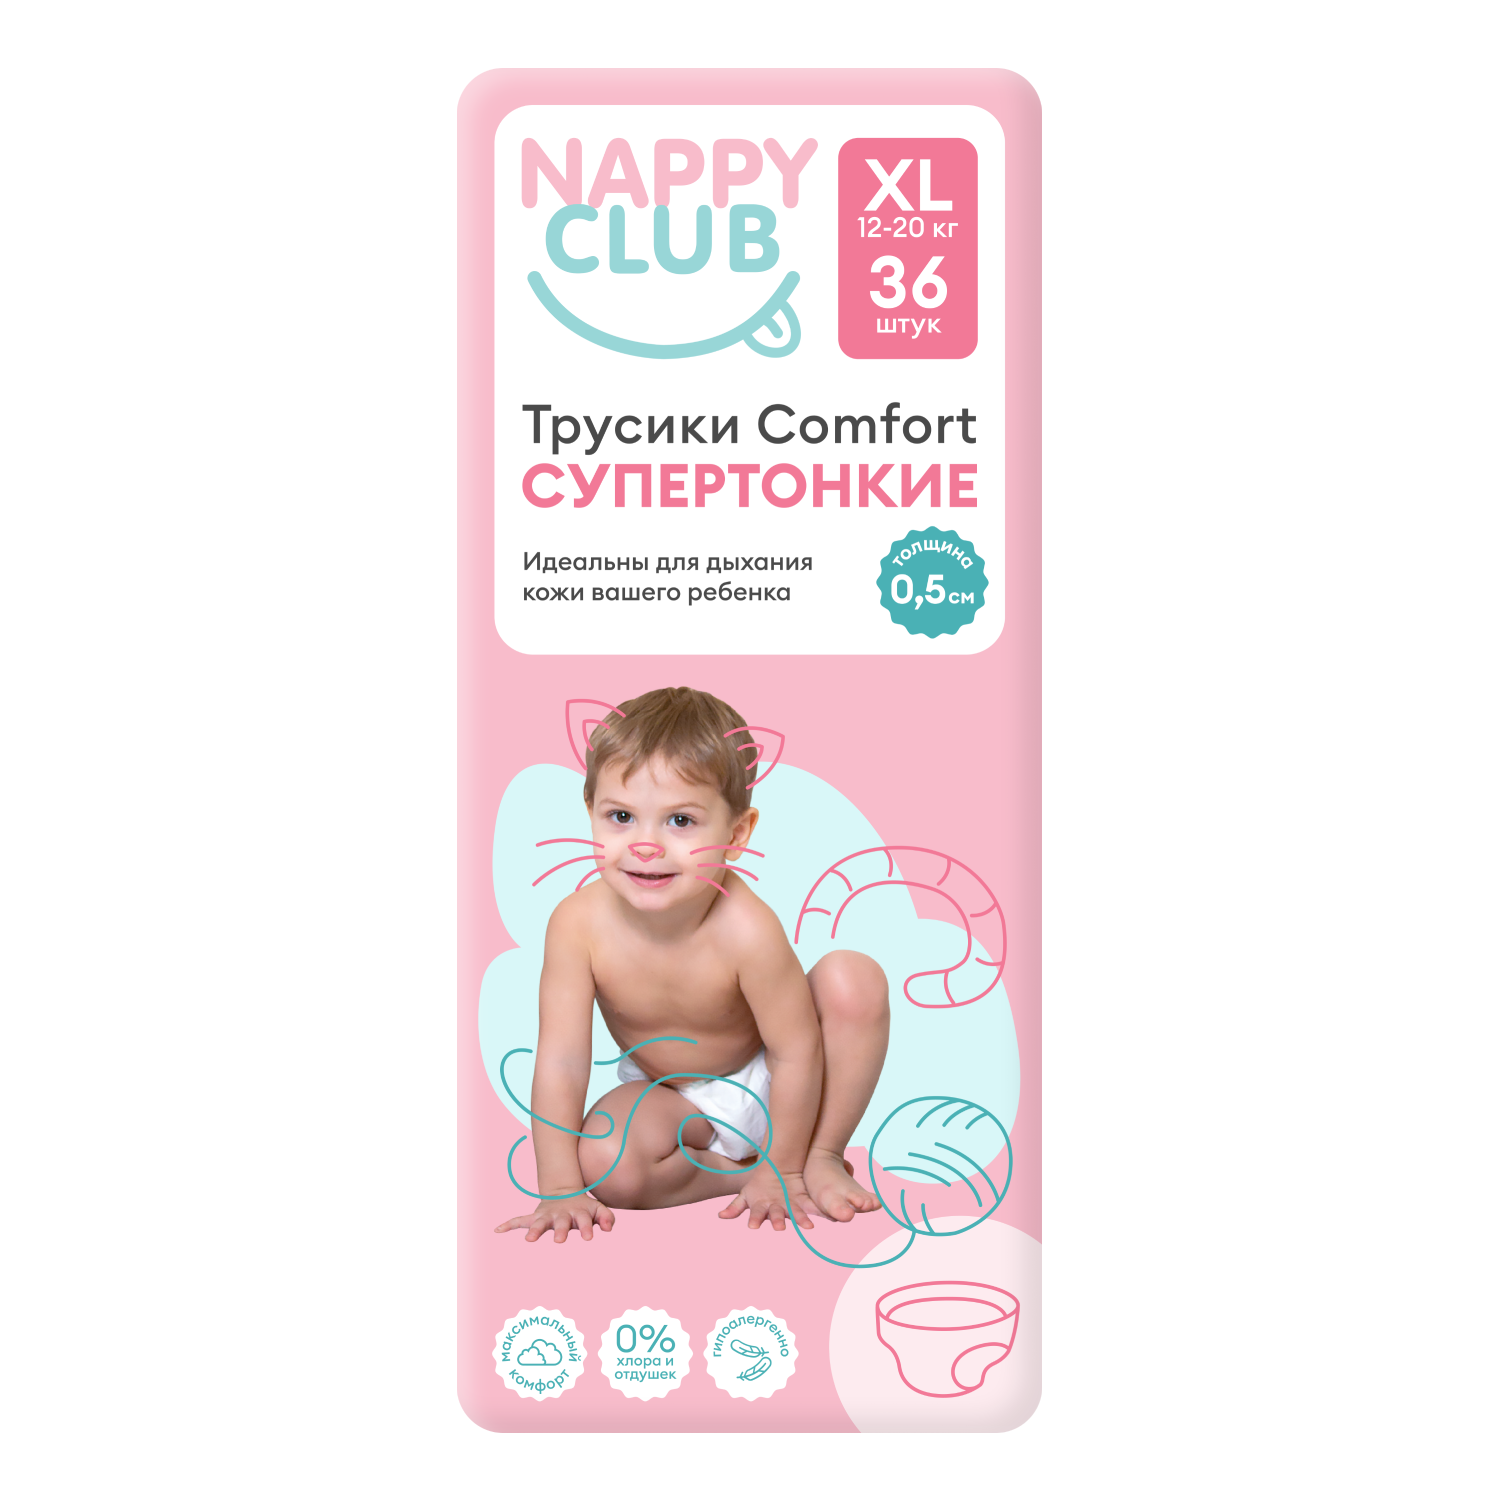 NappyClub трусики Comfort дневные супер-тонкие XL (12-20 кг) 36 шт. nappyclub трусики comfort дневные супер тонкие l 9 14 кг 44 шт